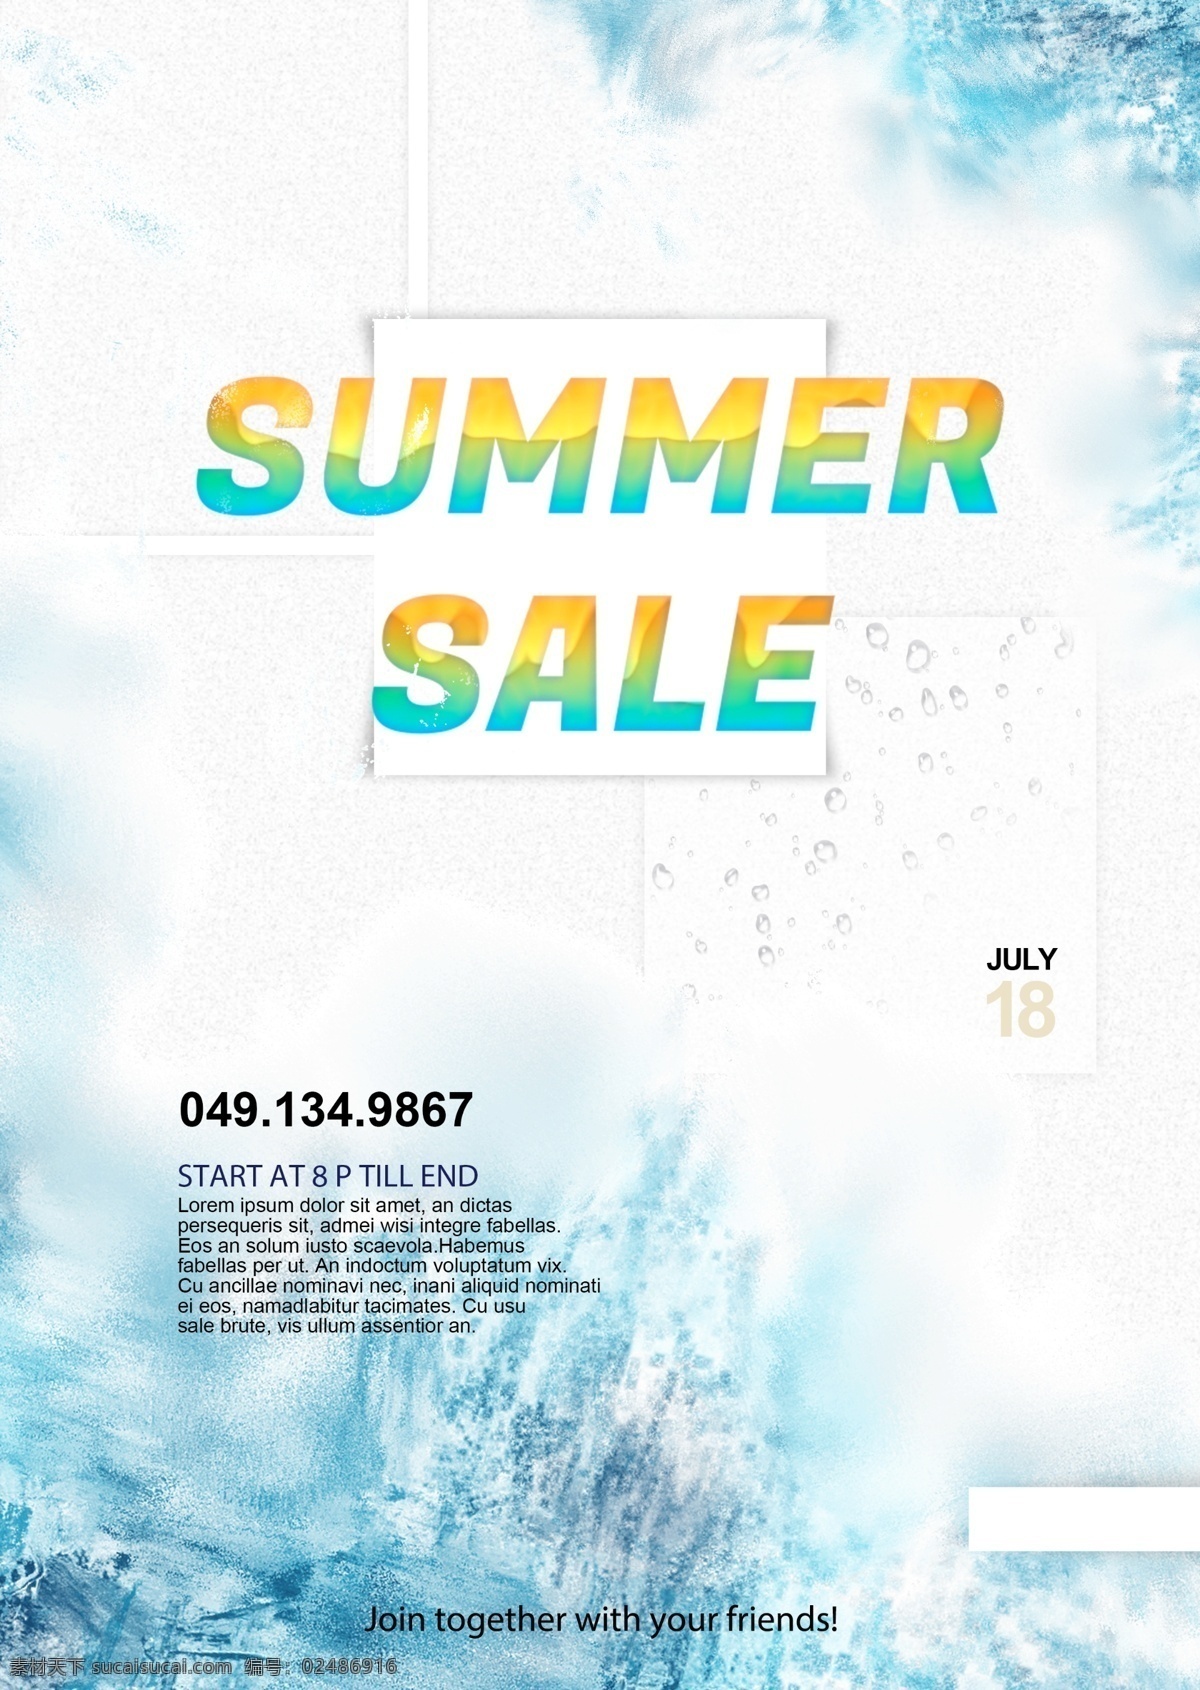 冰山 作用 简单 夏天 销售 海报 出售海报 夏季 大 减价 冰效应 简单的海报 渐变字体 简单的字体 creativ editbal 字体